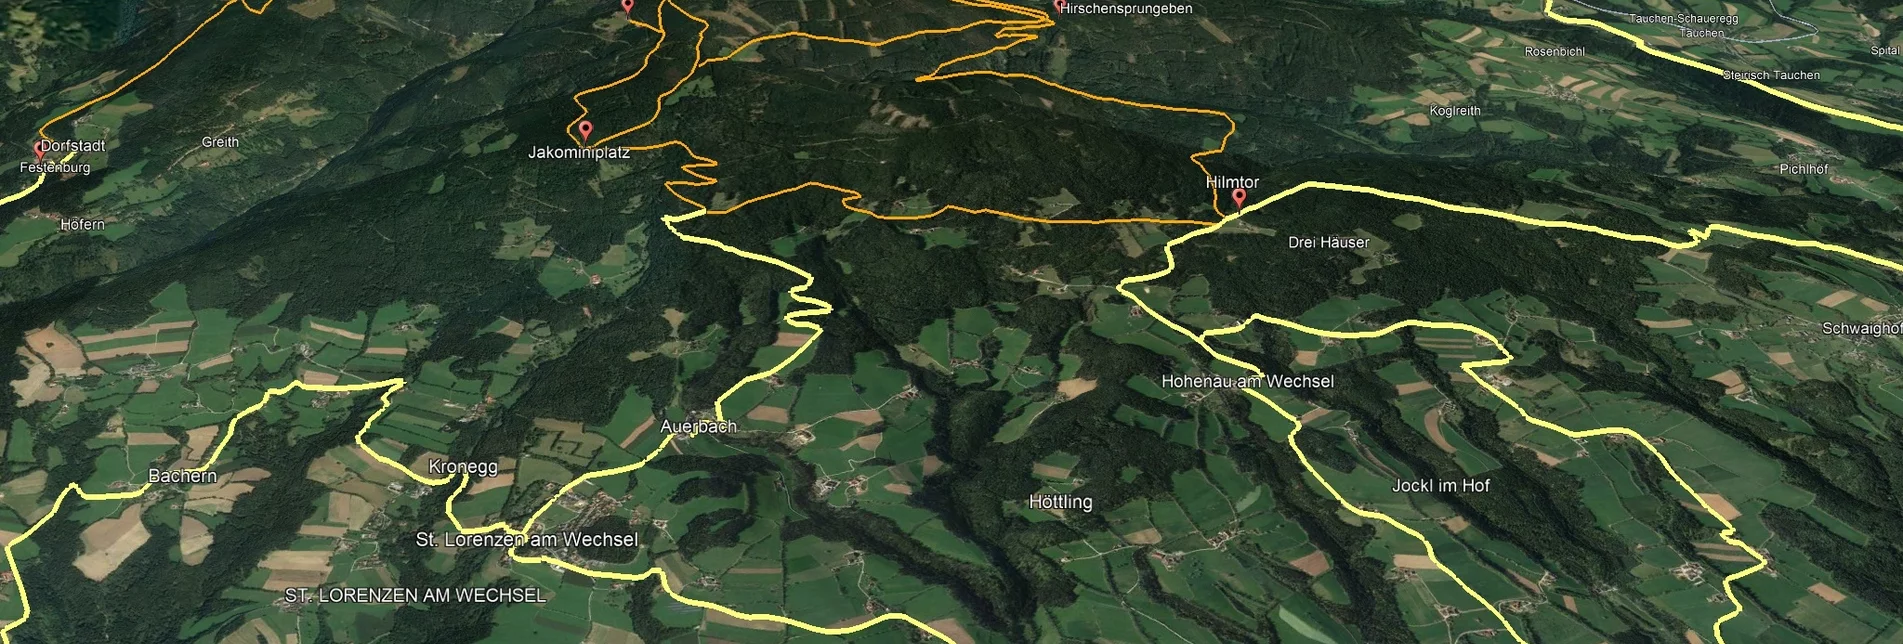 Mountainbike VORSCHAU Steirische Wexl Trails - Hilmtor Route - Touren-Impression #1 | © Verein Tourismusentwicklung Steirischer Wechsel